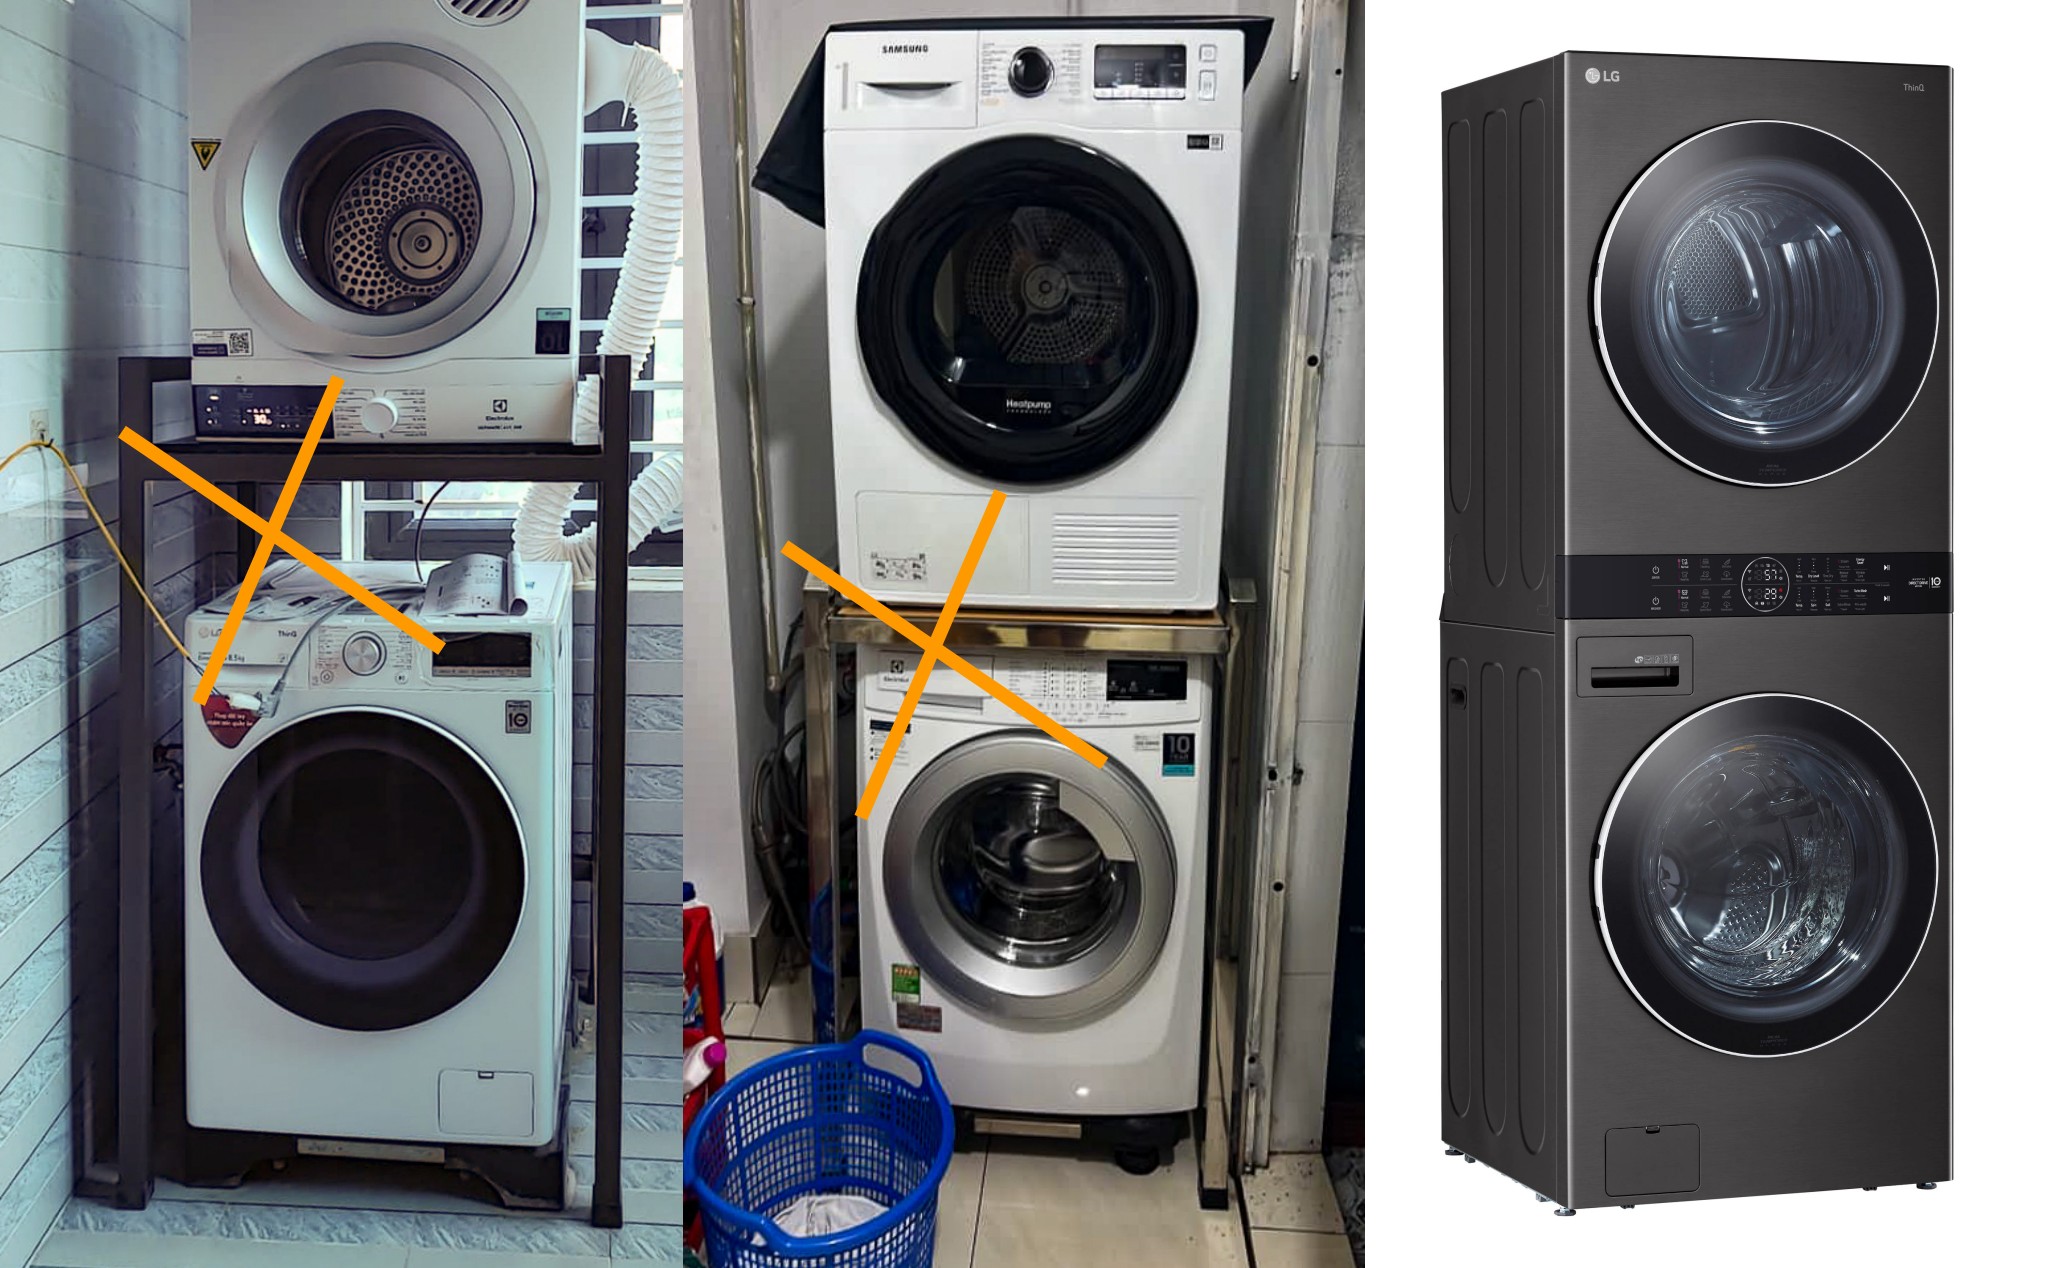 Không cần khung để máy sấy trên máy giặt, nó được thiết kế để chồng lên nhau từ đầu